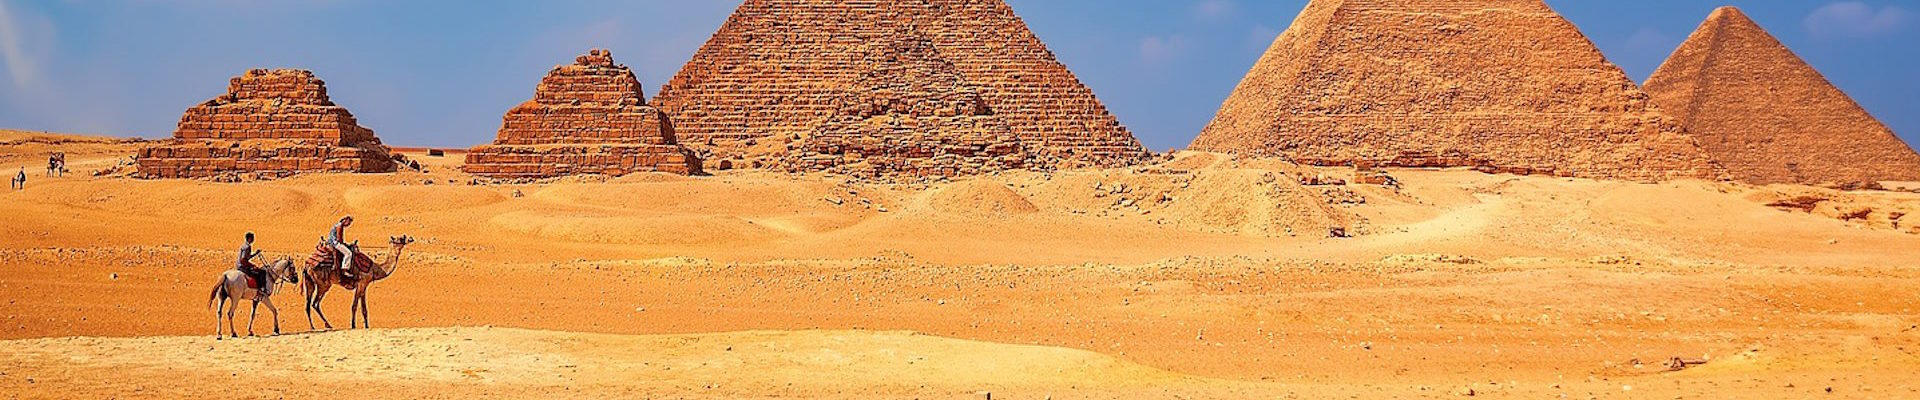 Kompleks piramid w Gizie. Fotografia współczesna.